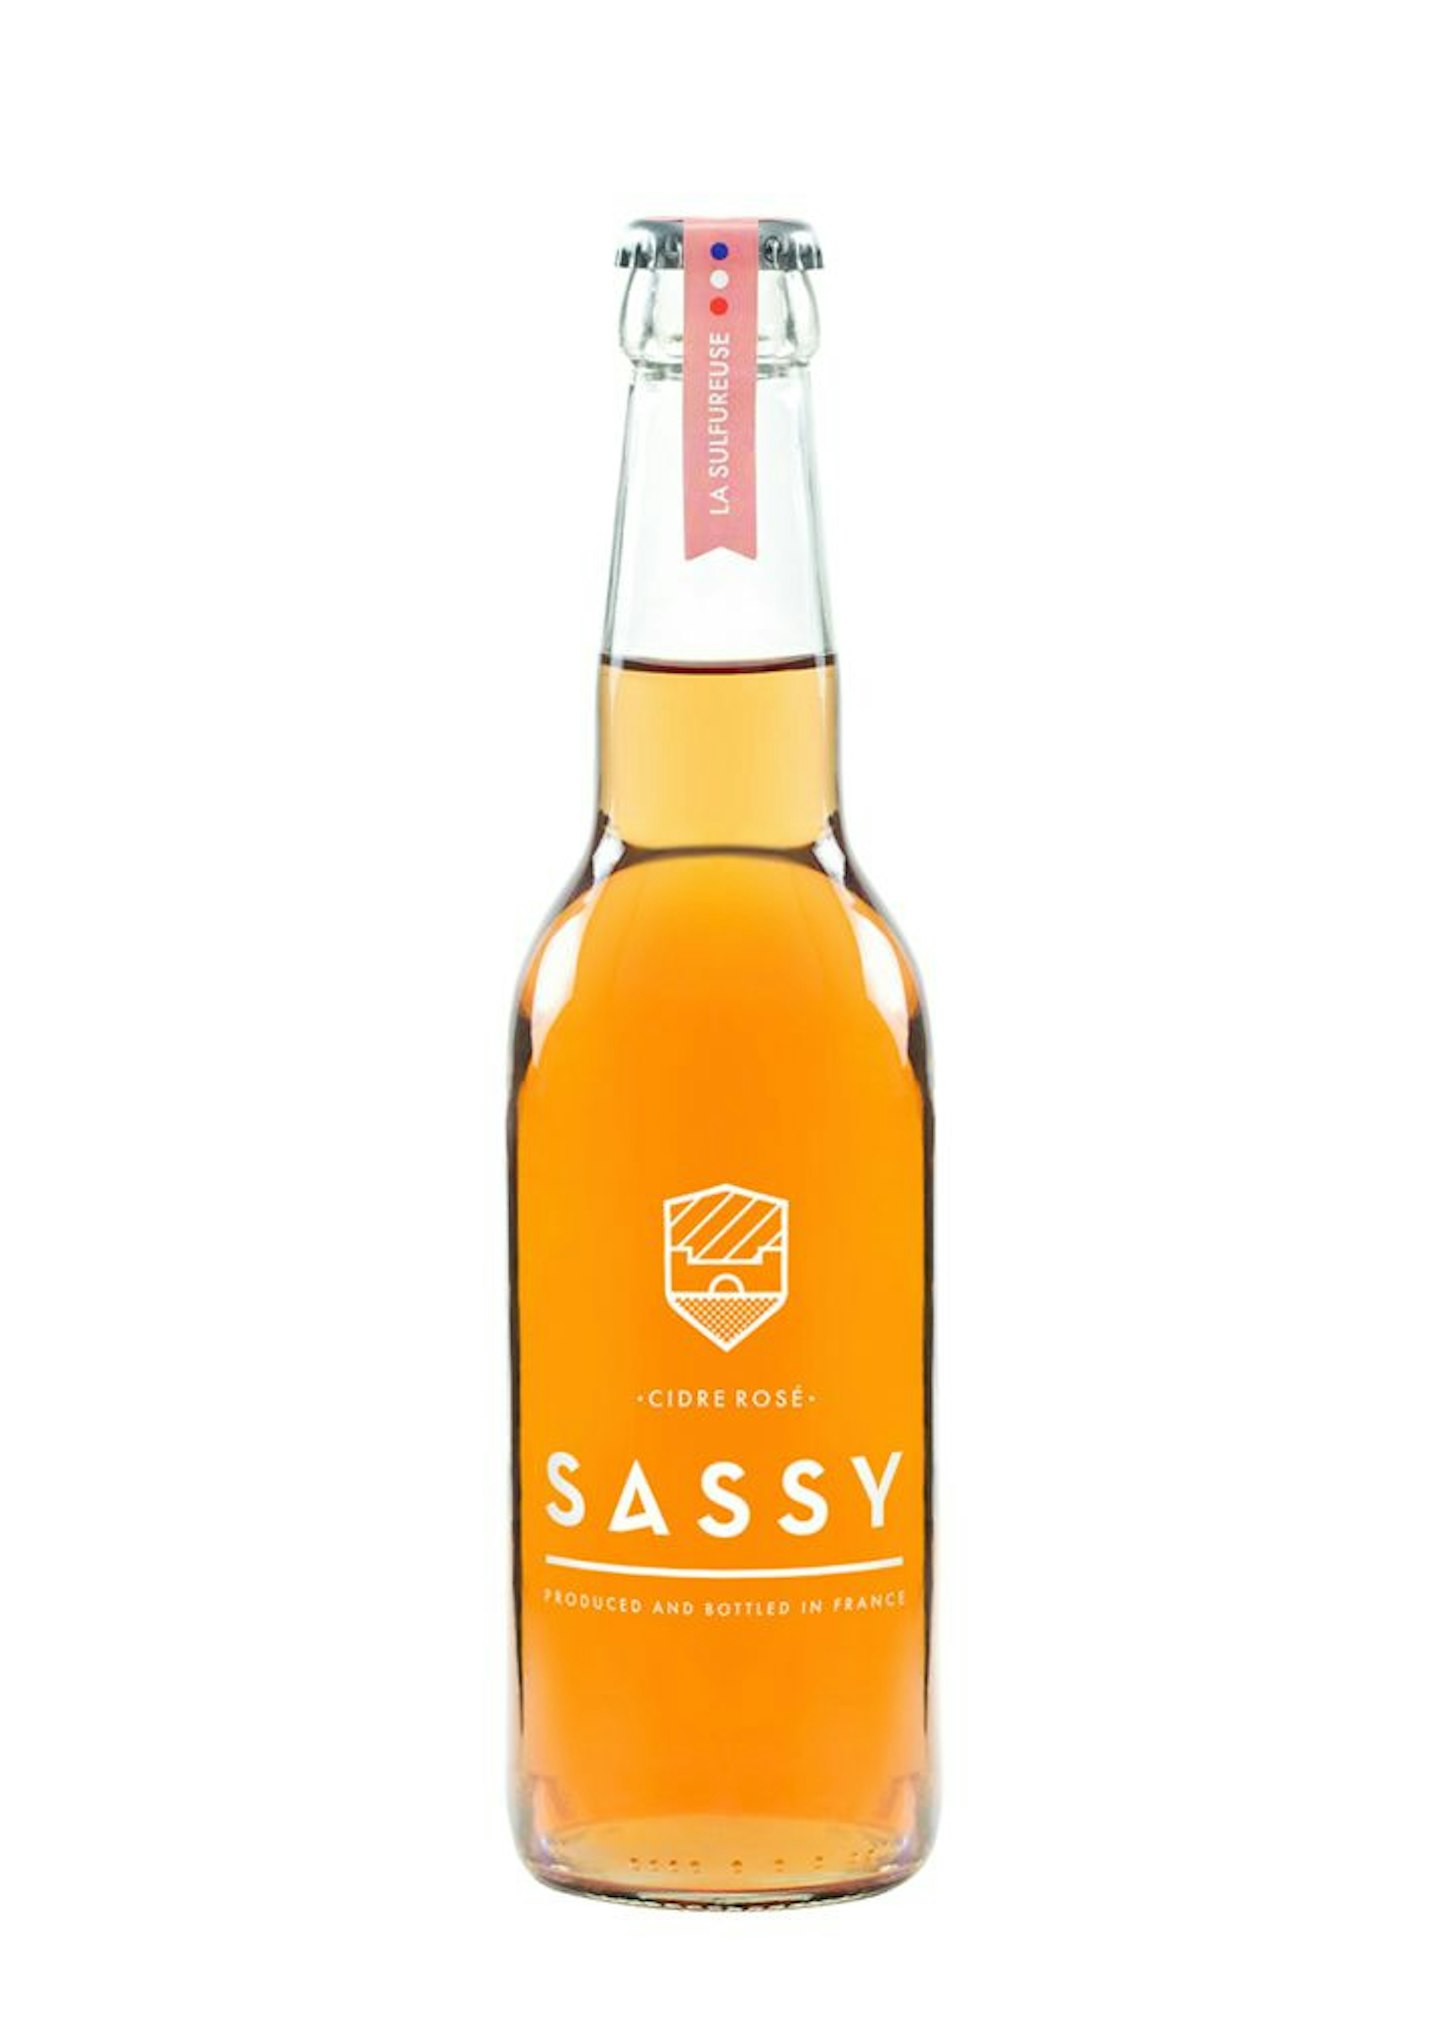 Maison Sassy Cider Rosu00e9, £3.75